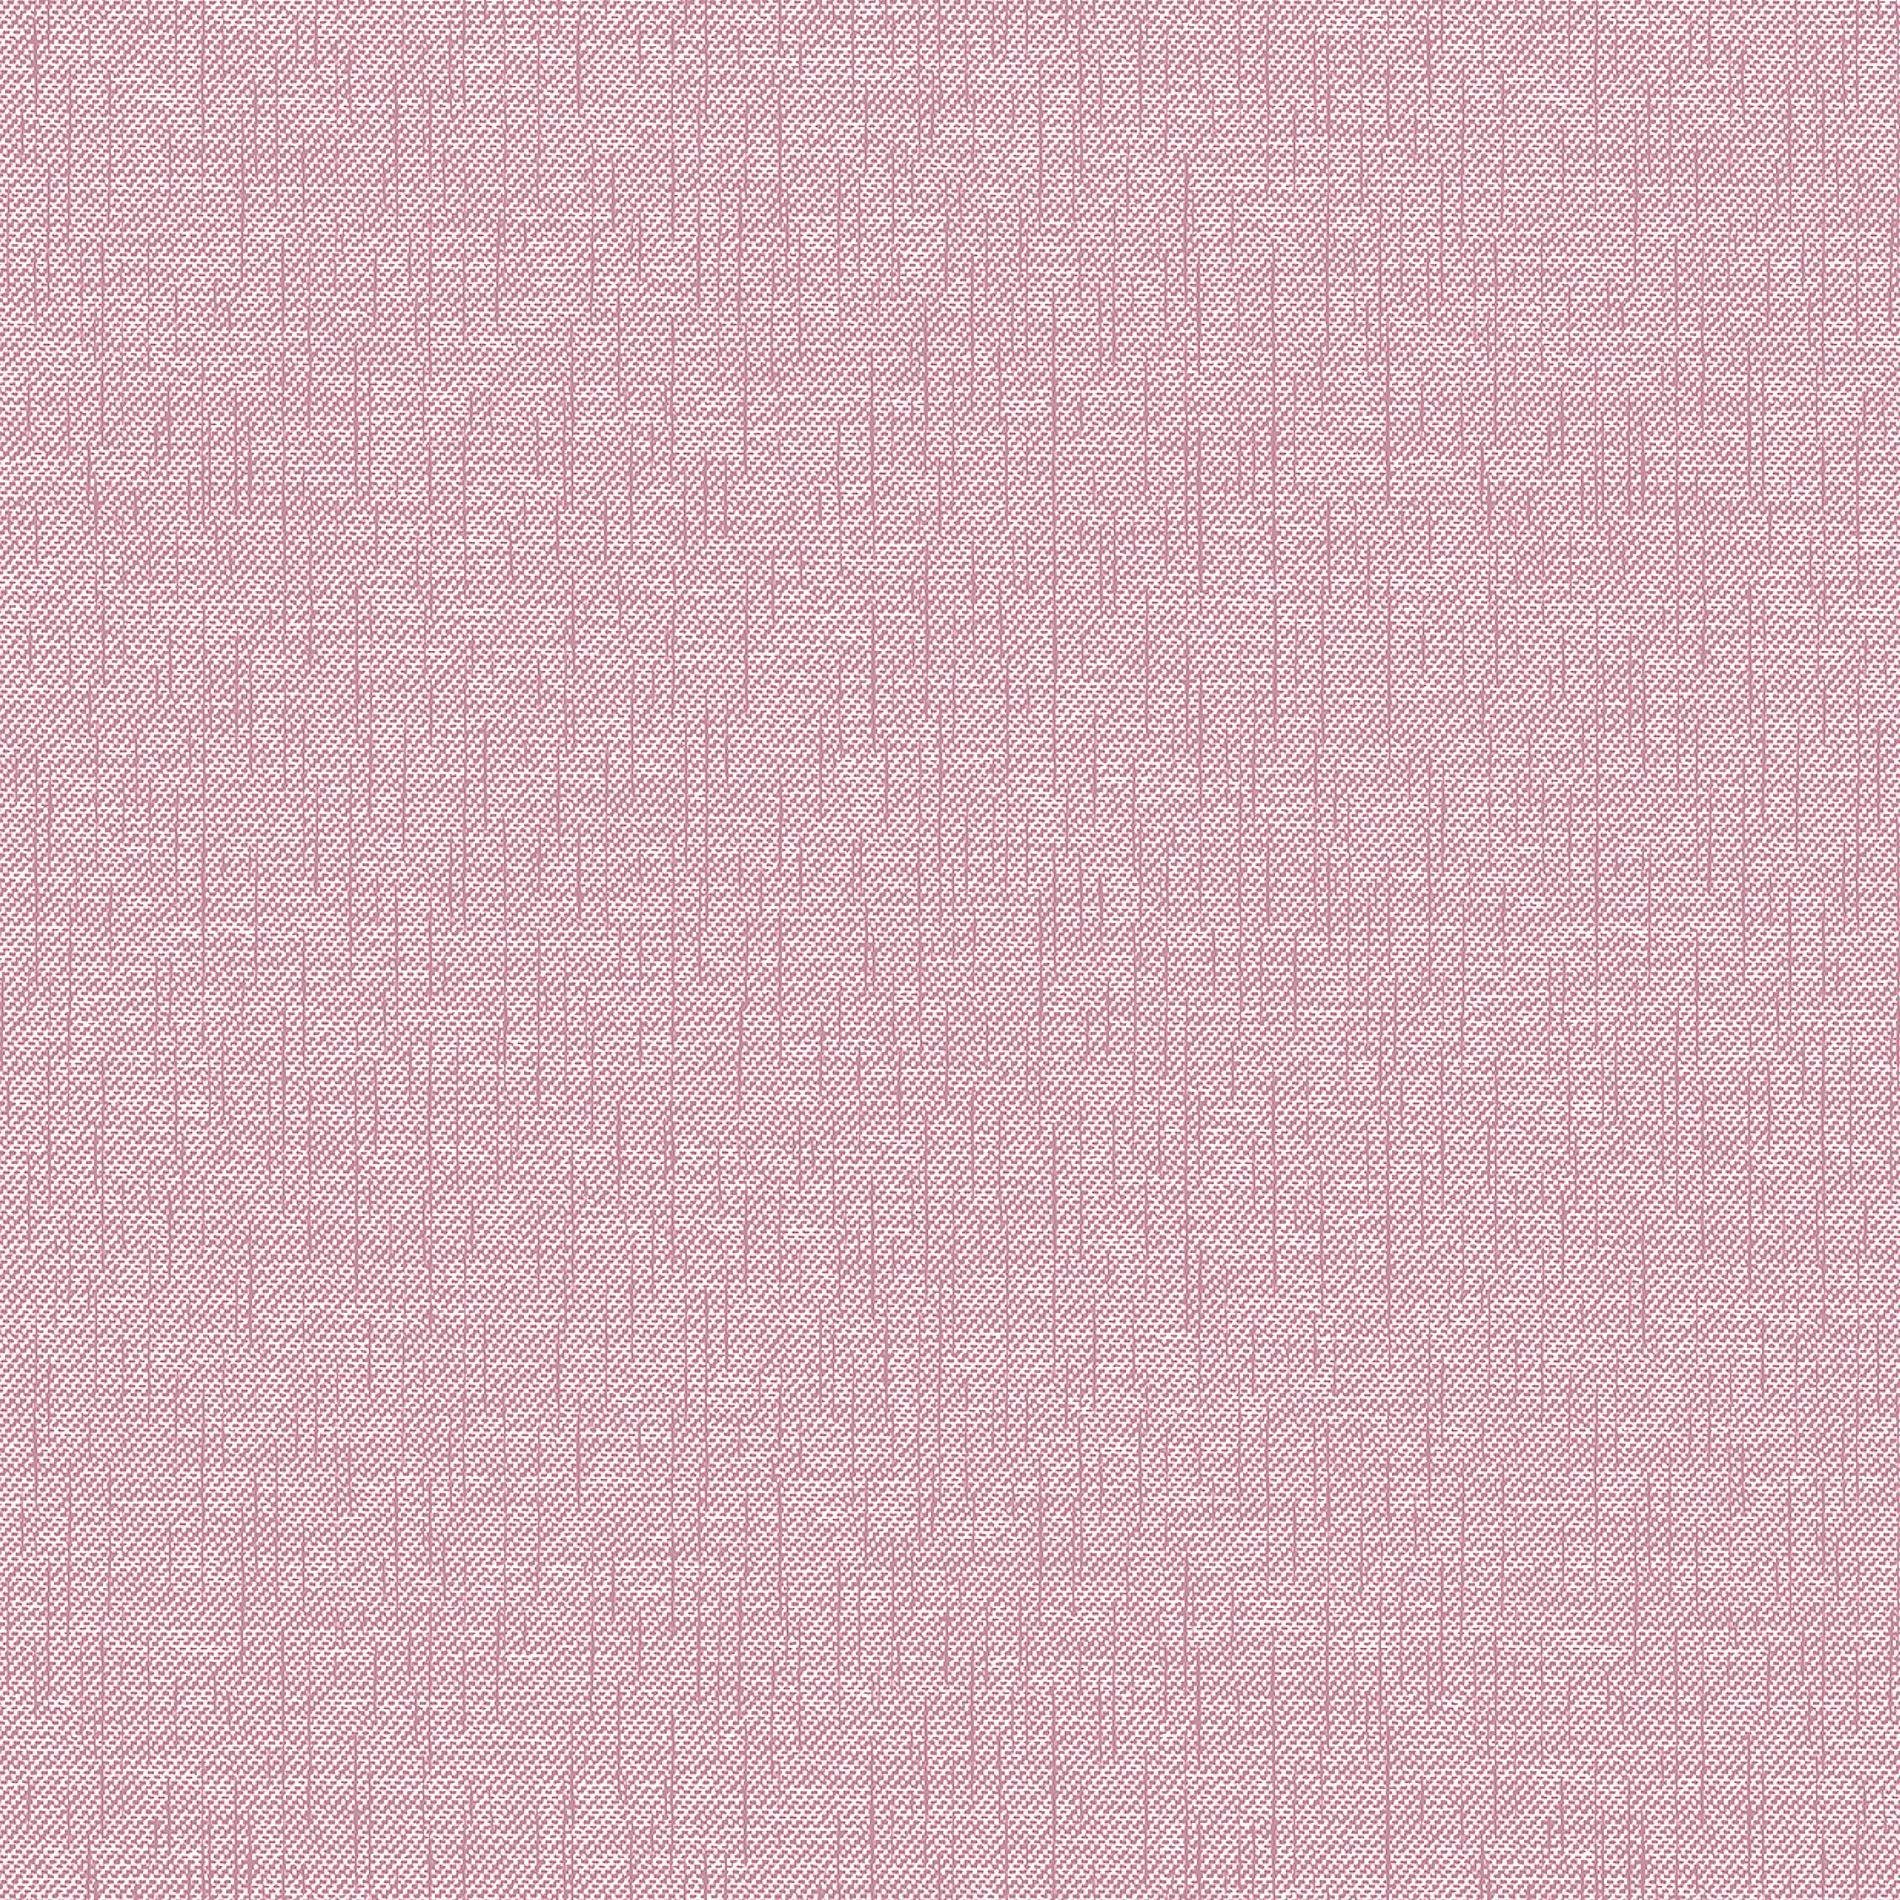 Bettwäsche Mako-Satin Carla 200 x 200 cm rosa, Irisette, Baumolle, 3 teilig, Bettbezug Kopfkissenbezug Set kuschelig weich hochwertig